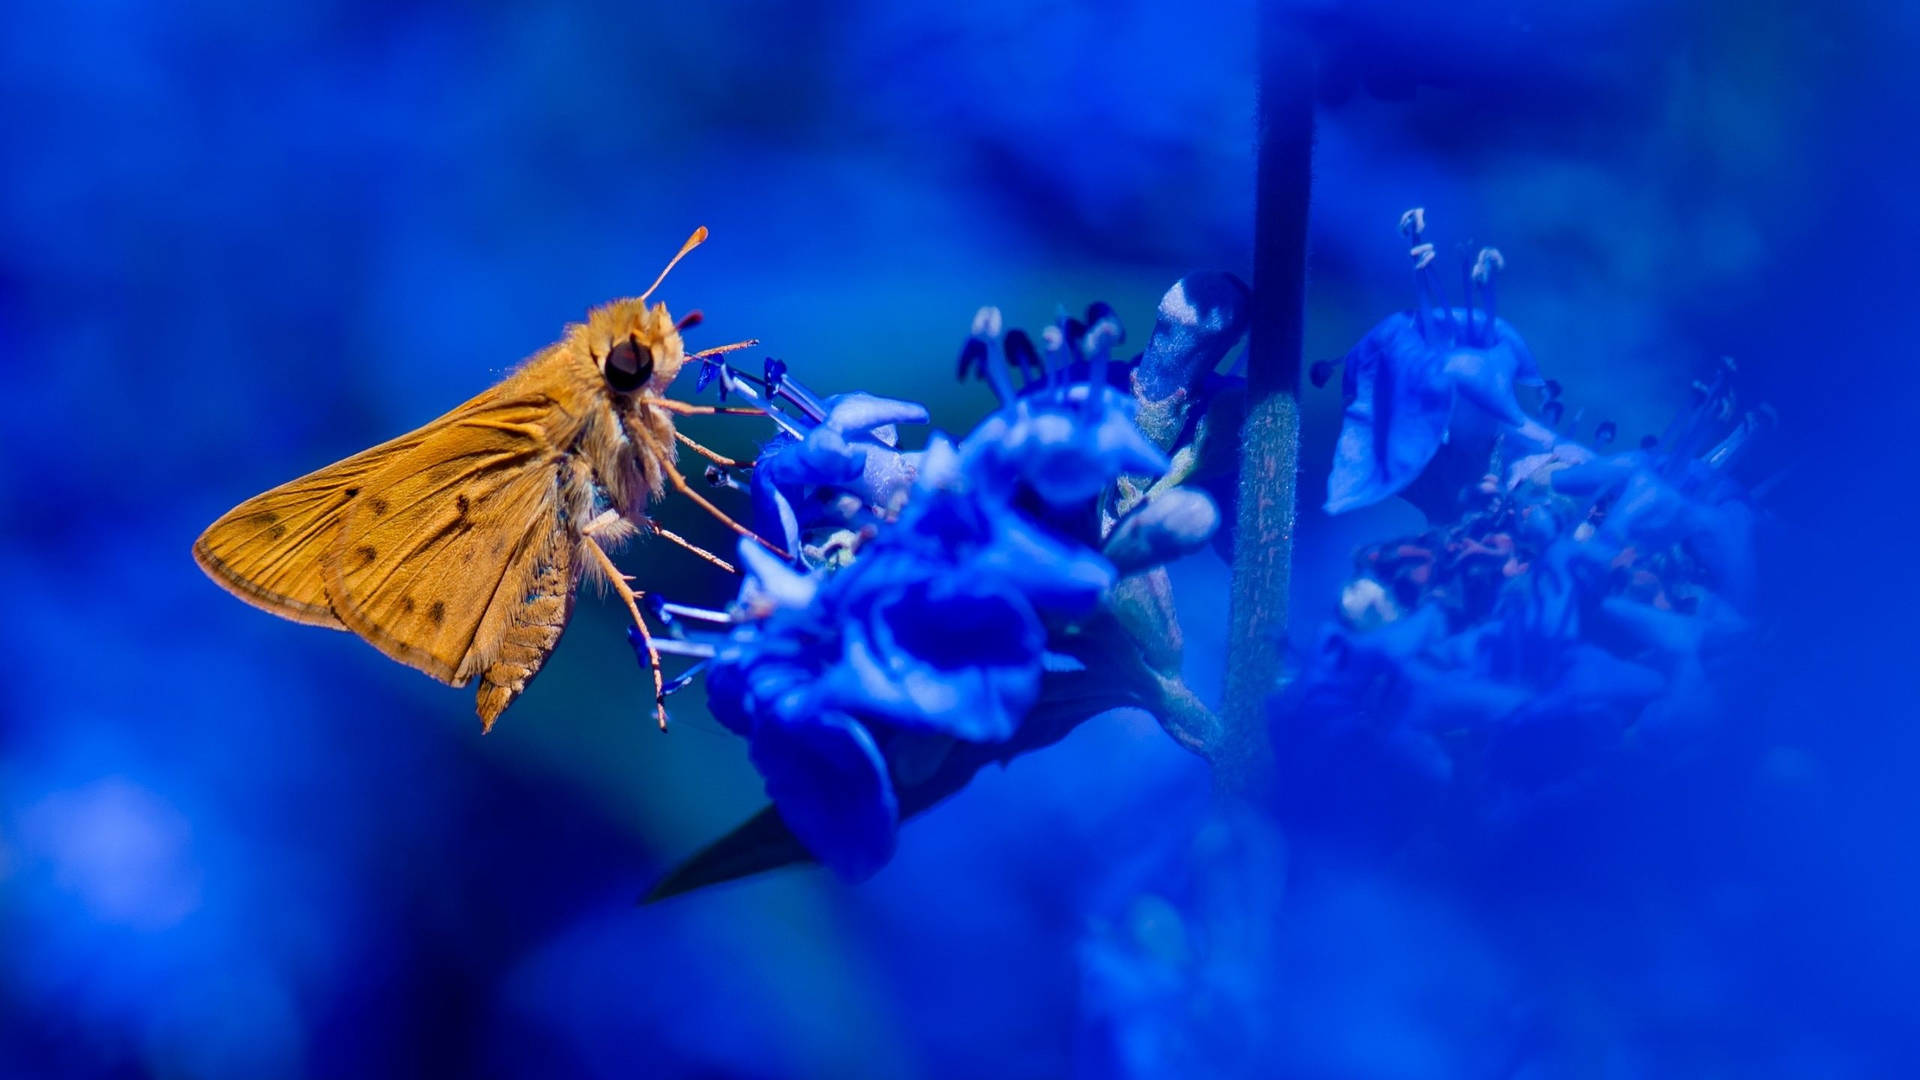 Floresestéticas Em Amarelo, Azul E Mariposa. Papel de Parede